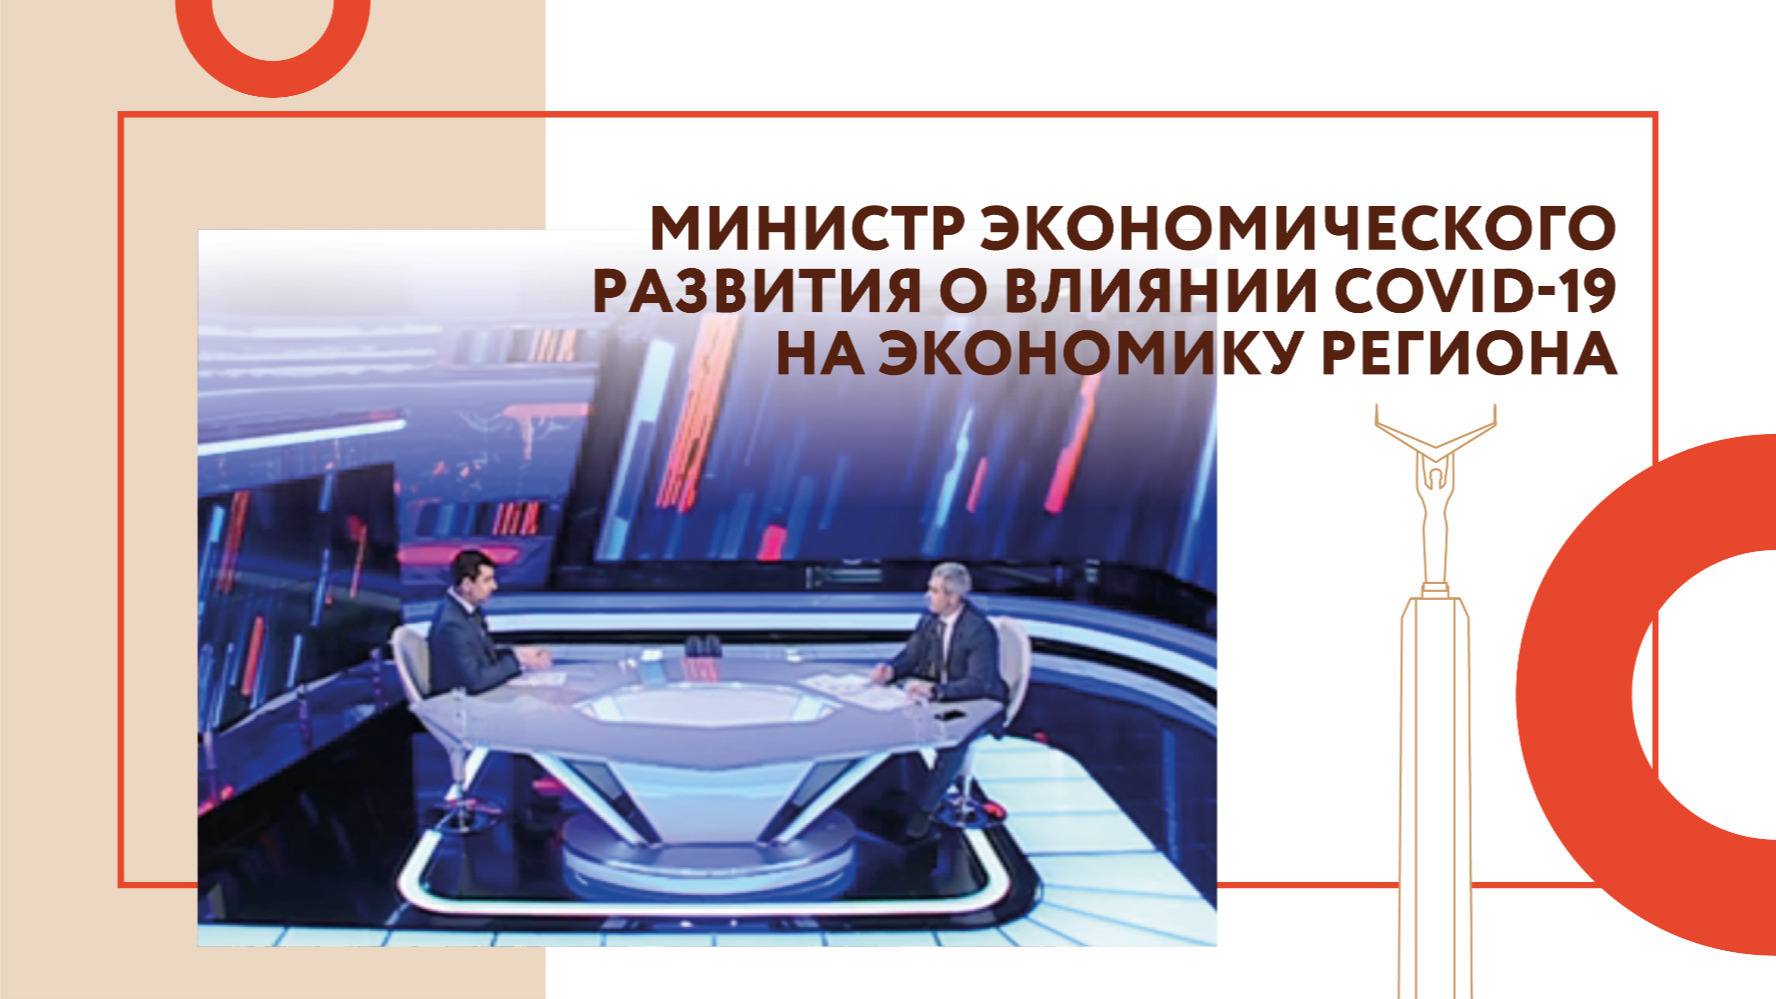 Министр экономического развития Самарской области рассказал о влиянии Covid-19 на экономику региона